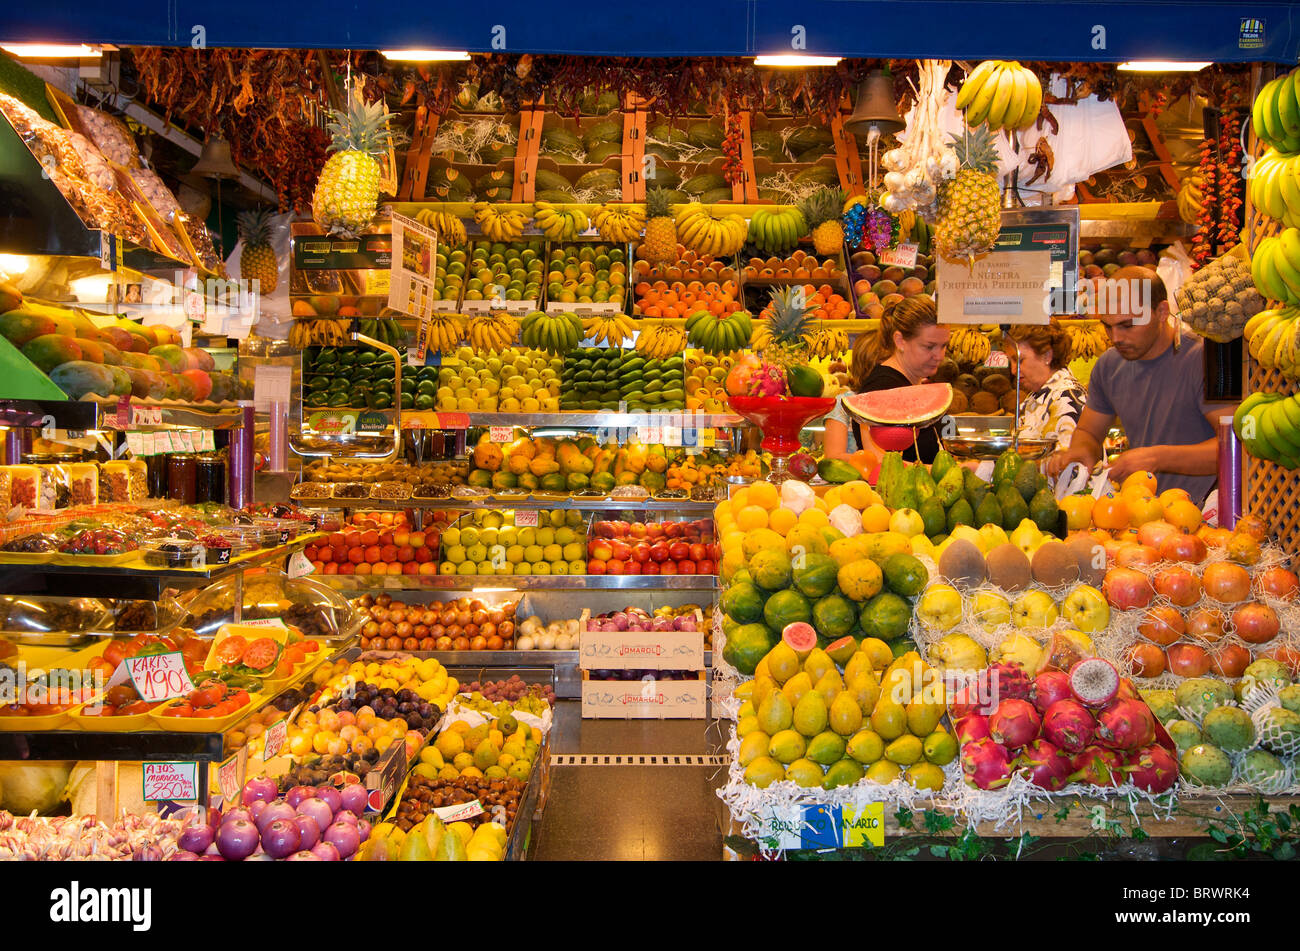 Market in Las Palmas, Gran Canaria, Canary Islands, Spain Stock Photo